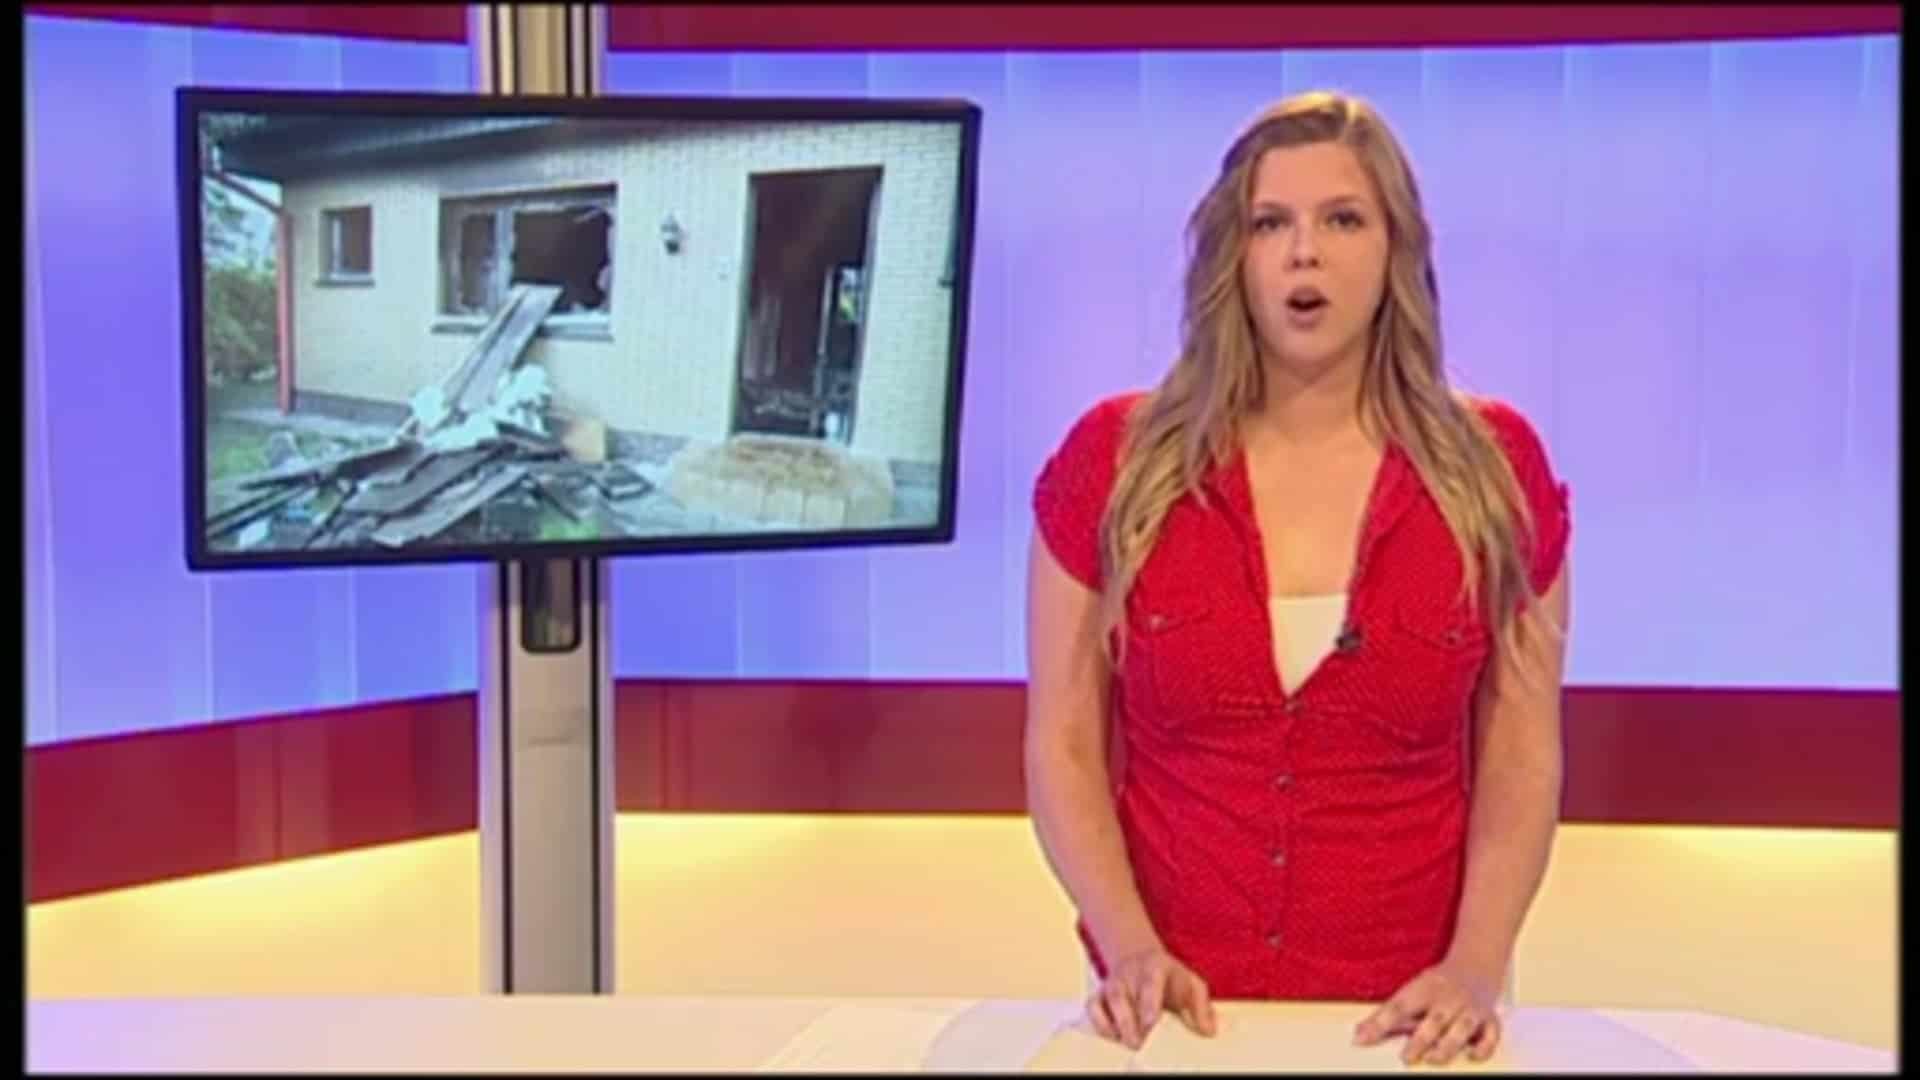 ev1.tv aktuell - 16